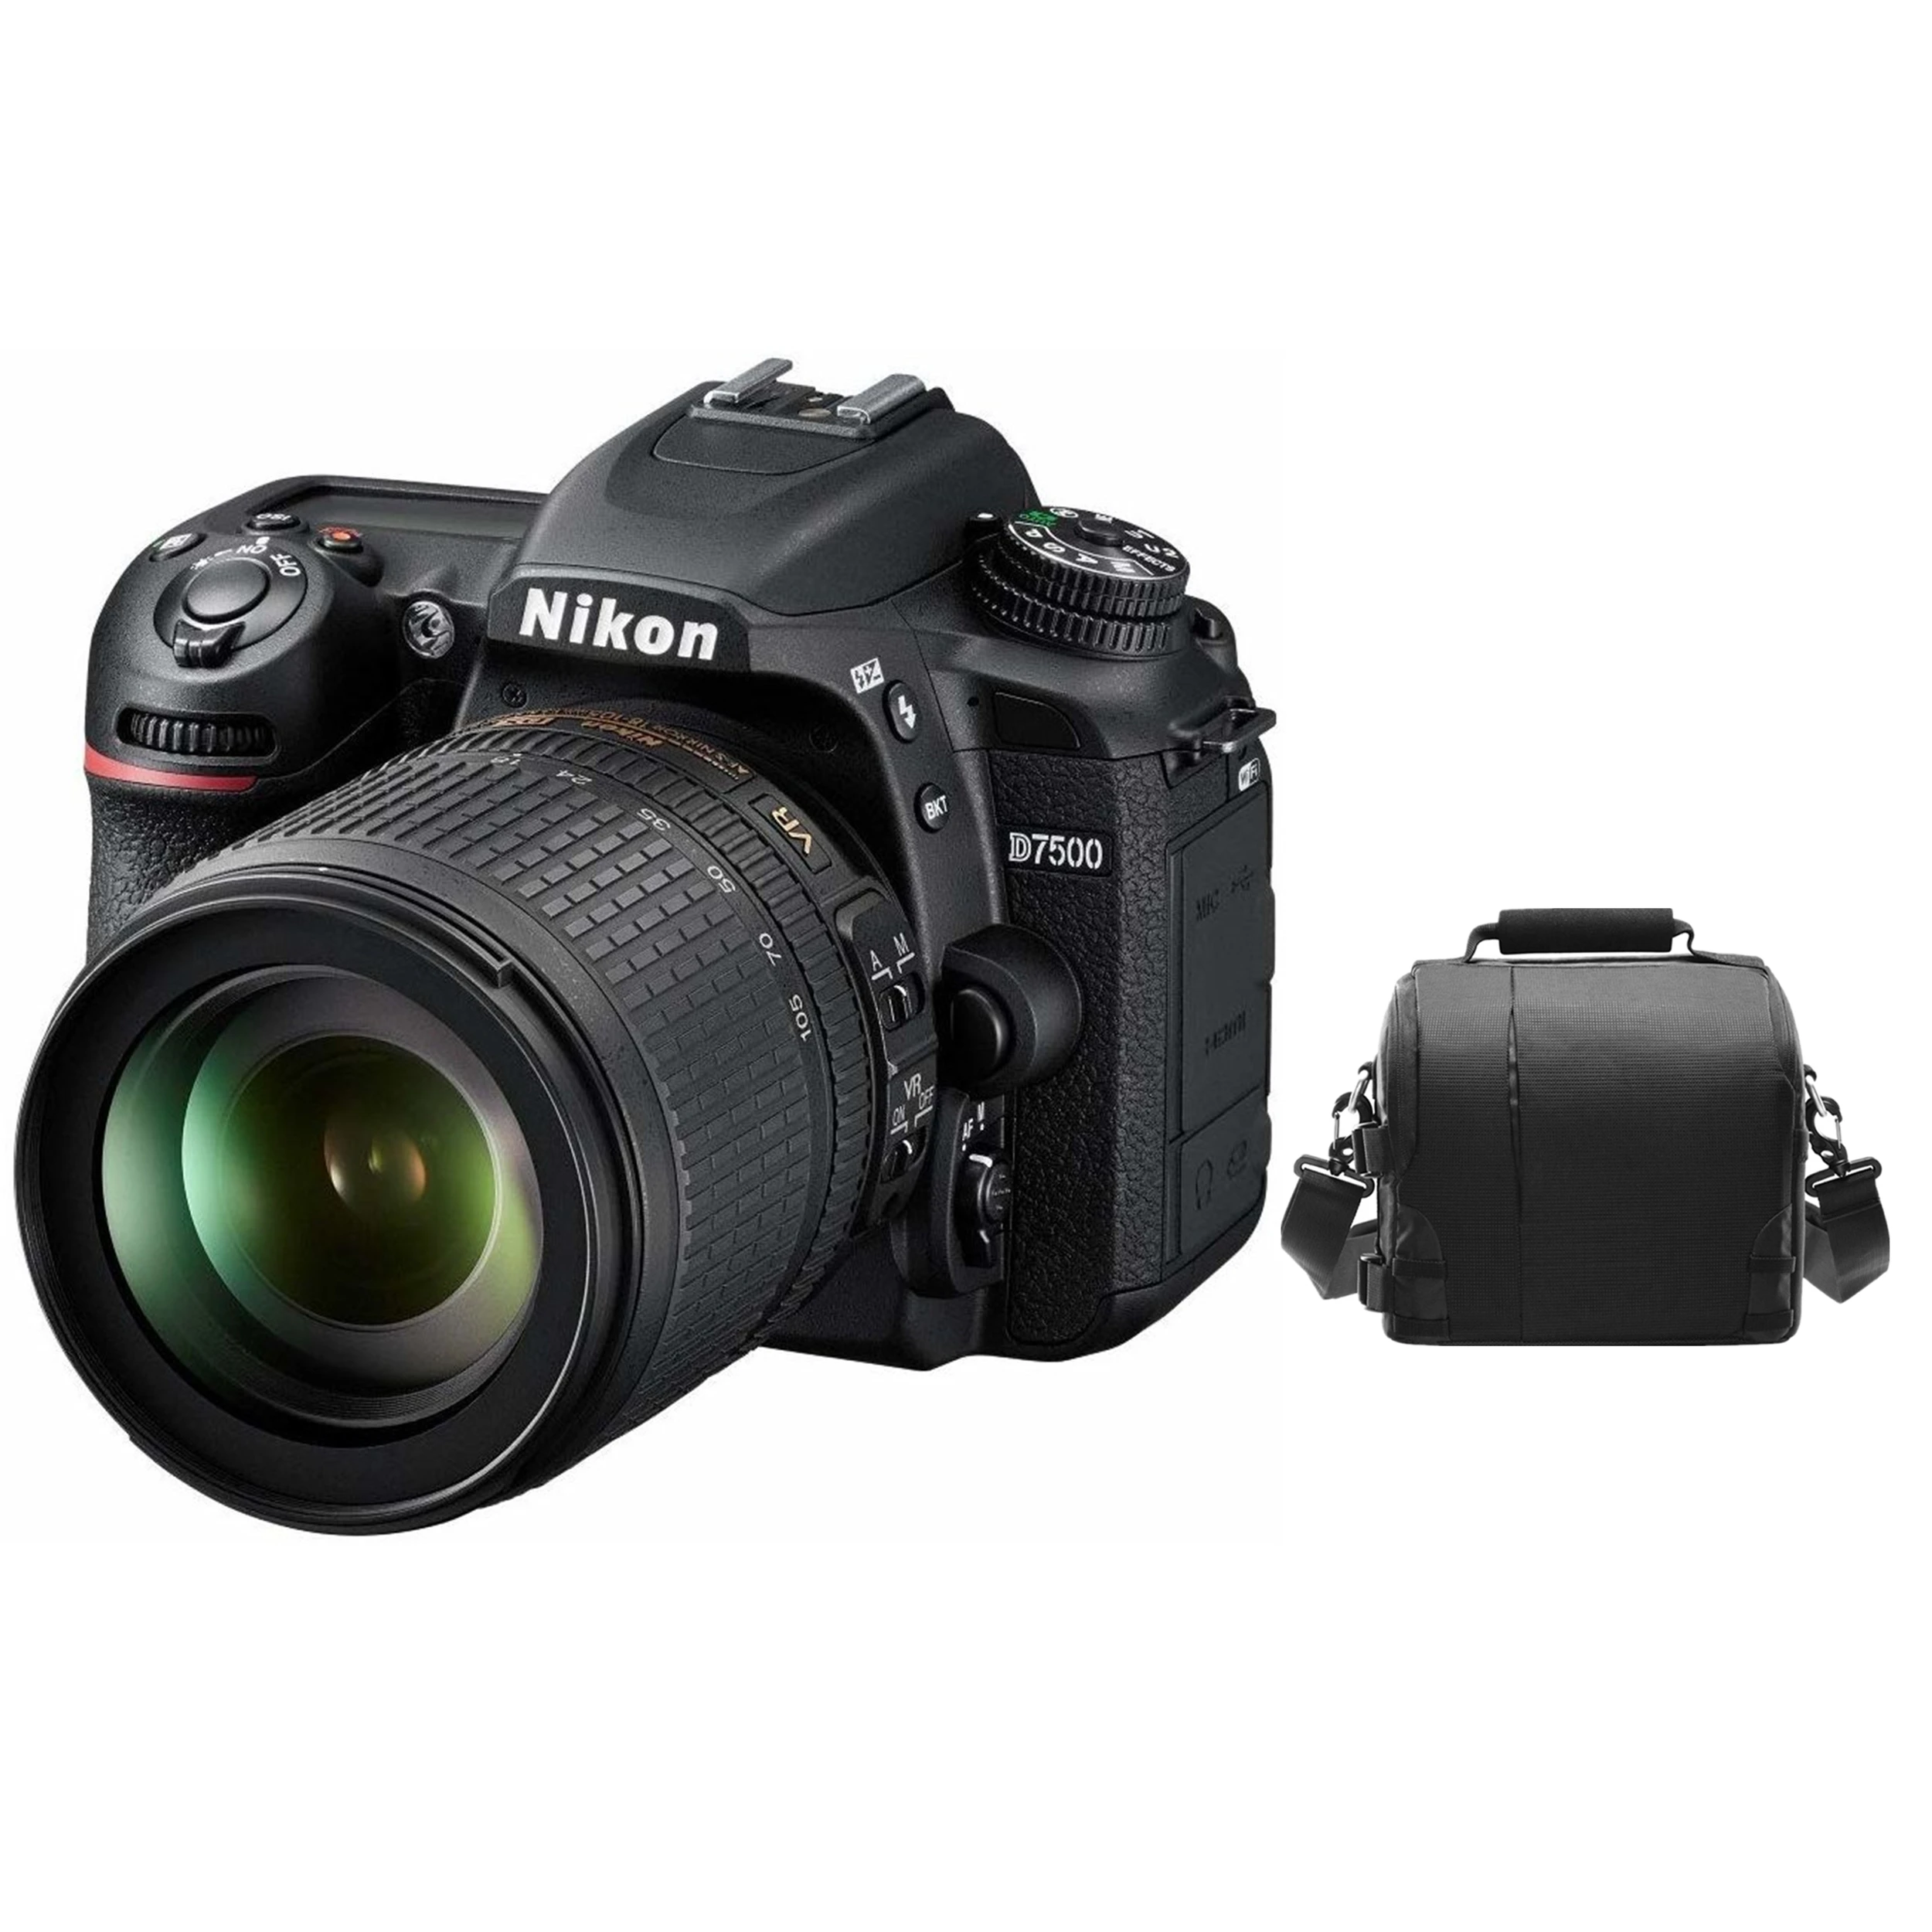 

Nikon D7500 Digital DSLR Camera with AF-S DX 18-105mm F3.5-5.6G ED VR + Camera Bag